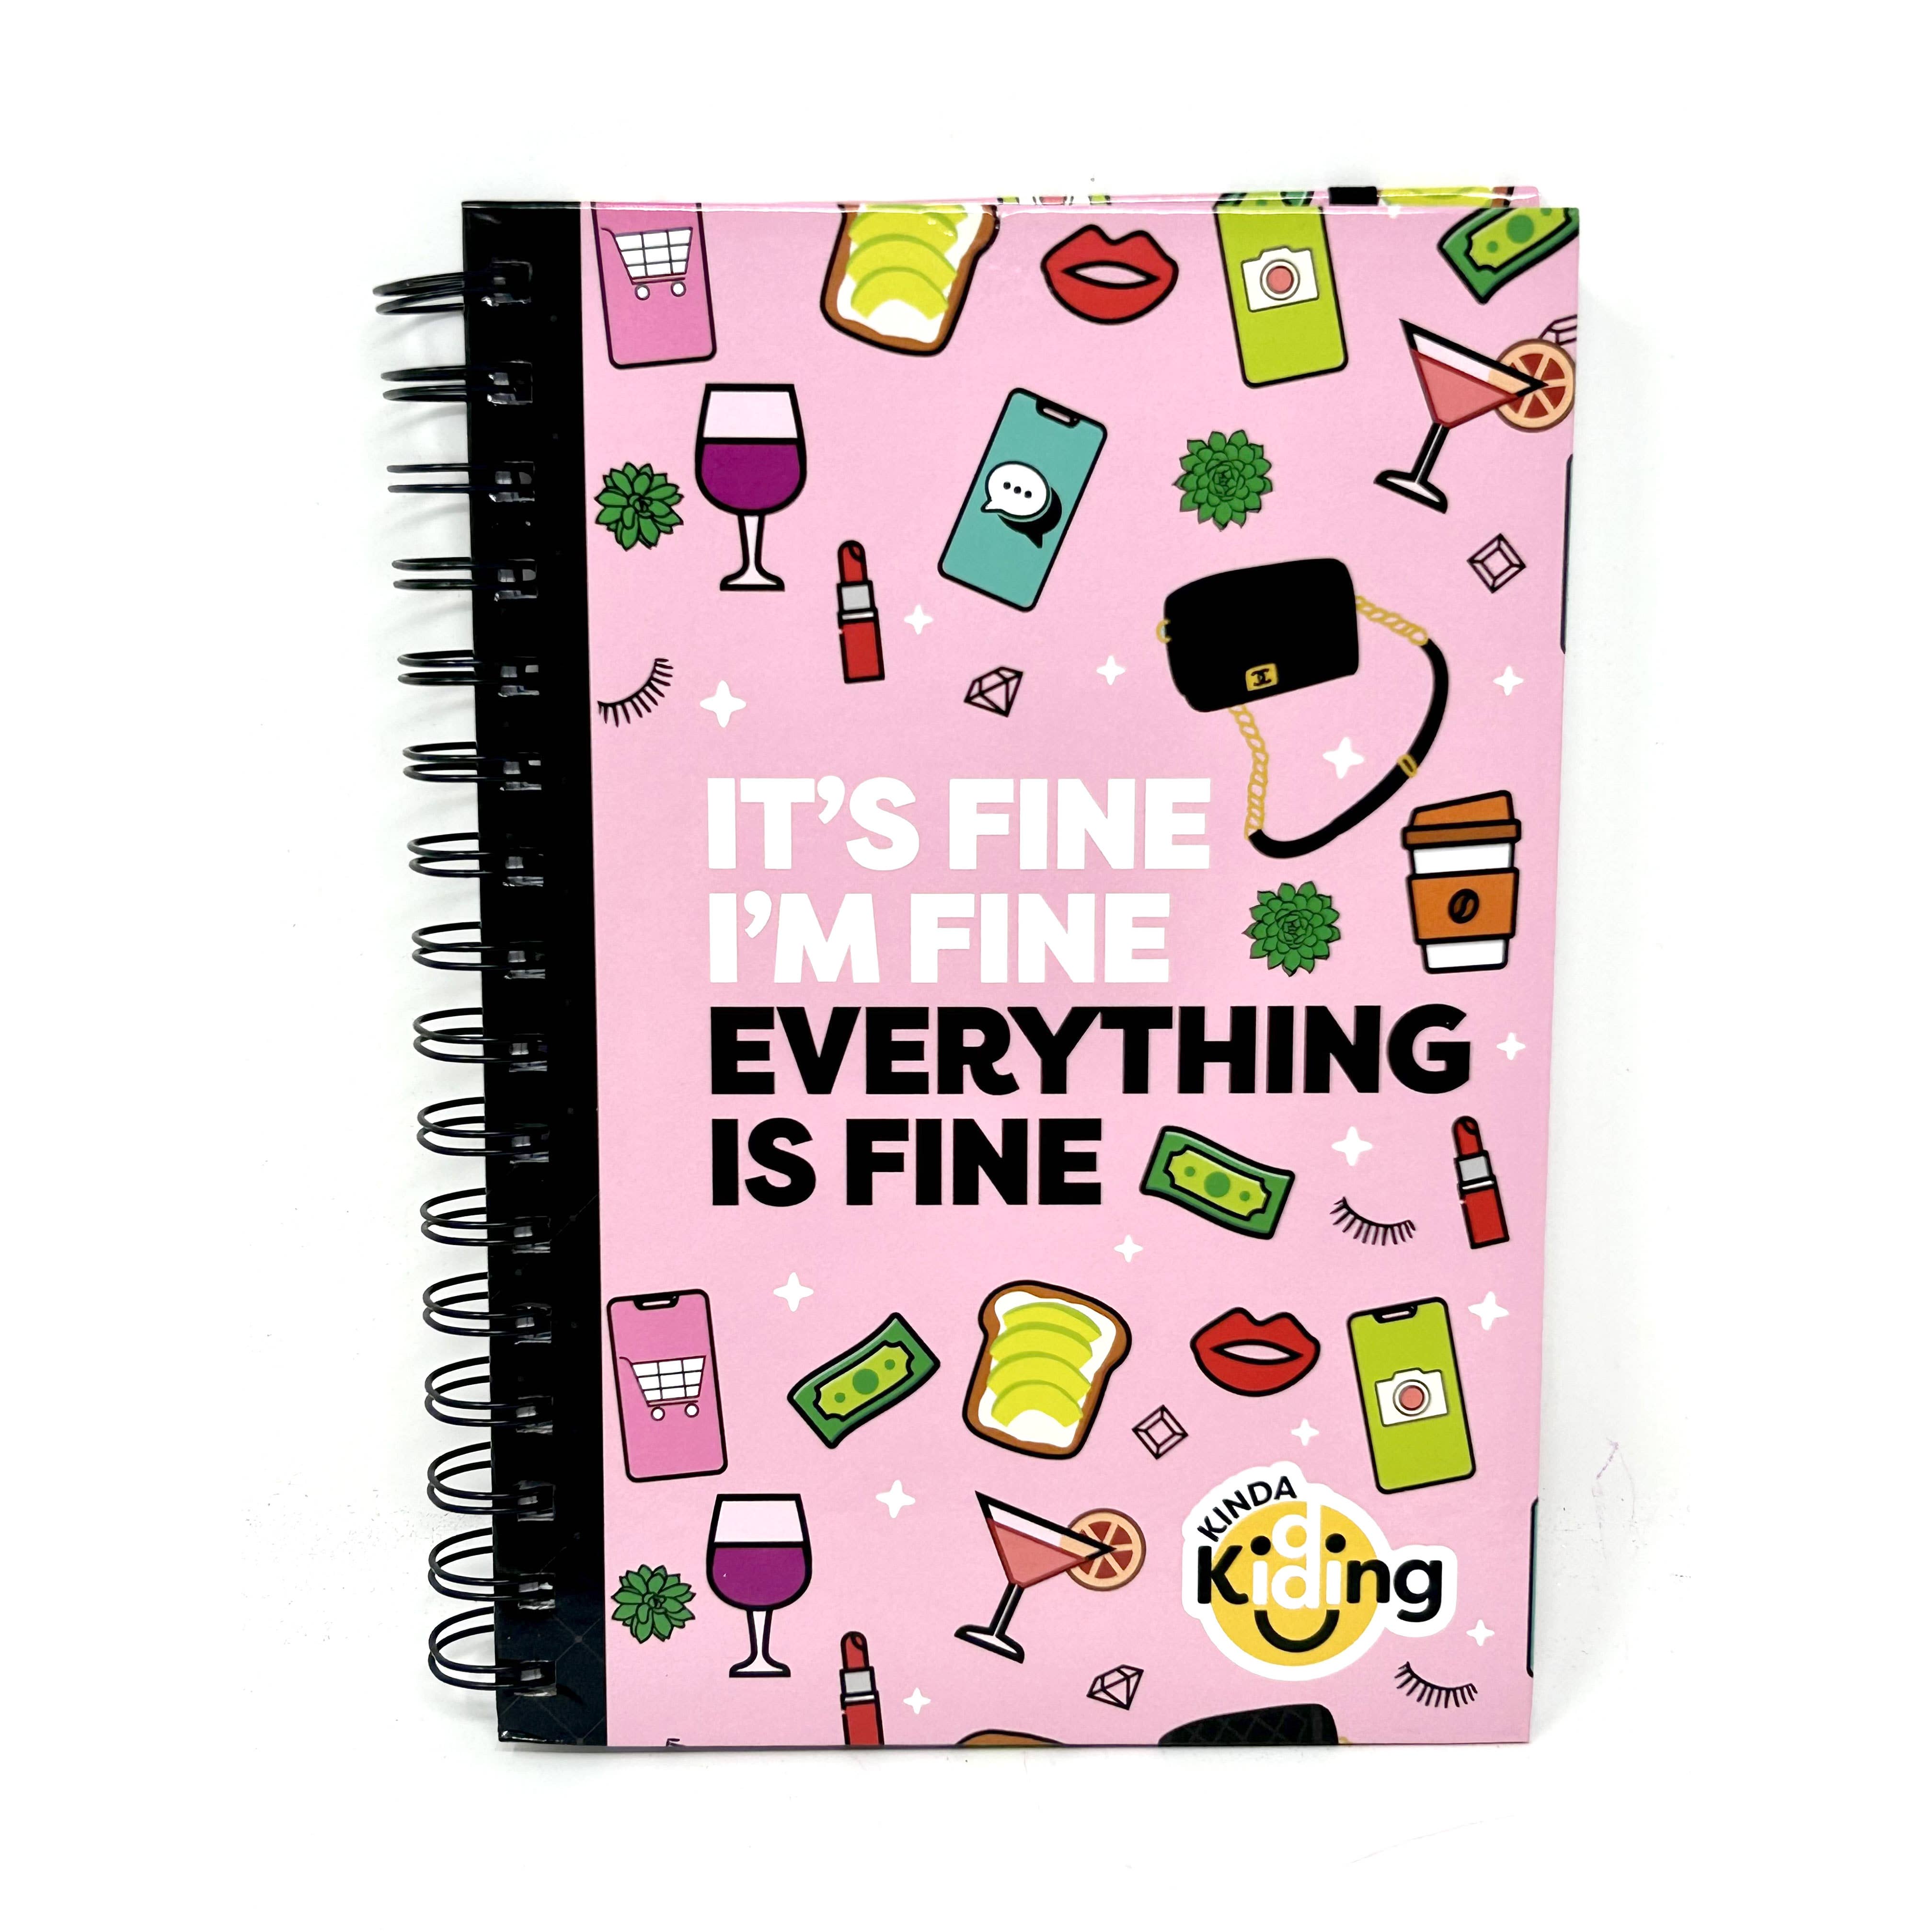 It's Fine I'm Fine Everything is Fine Spiral-Bound Notebook